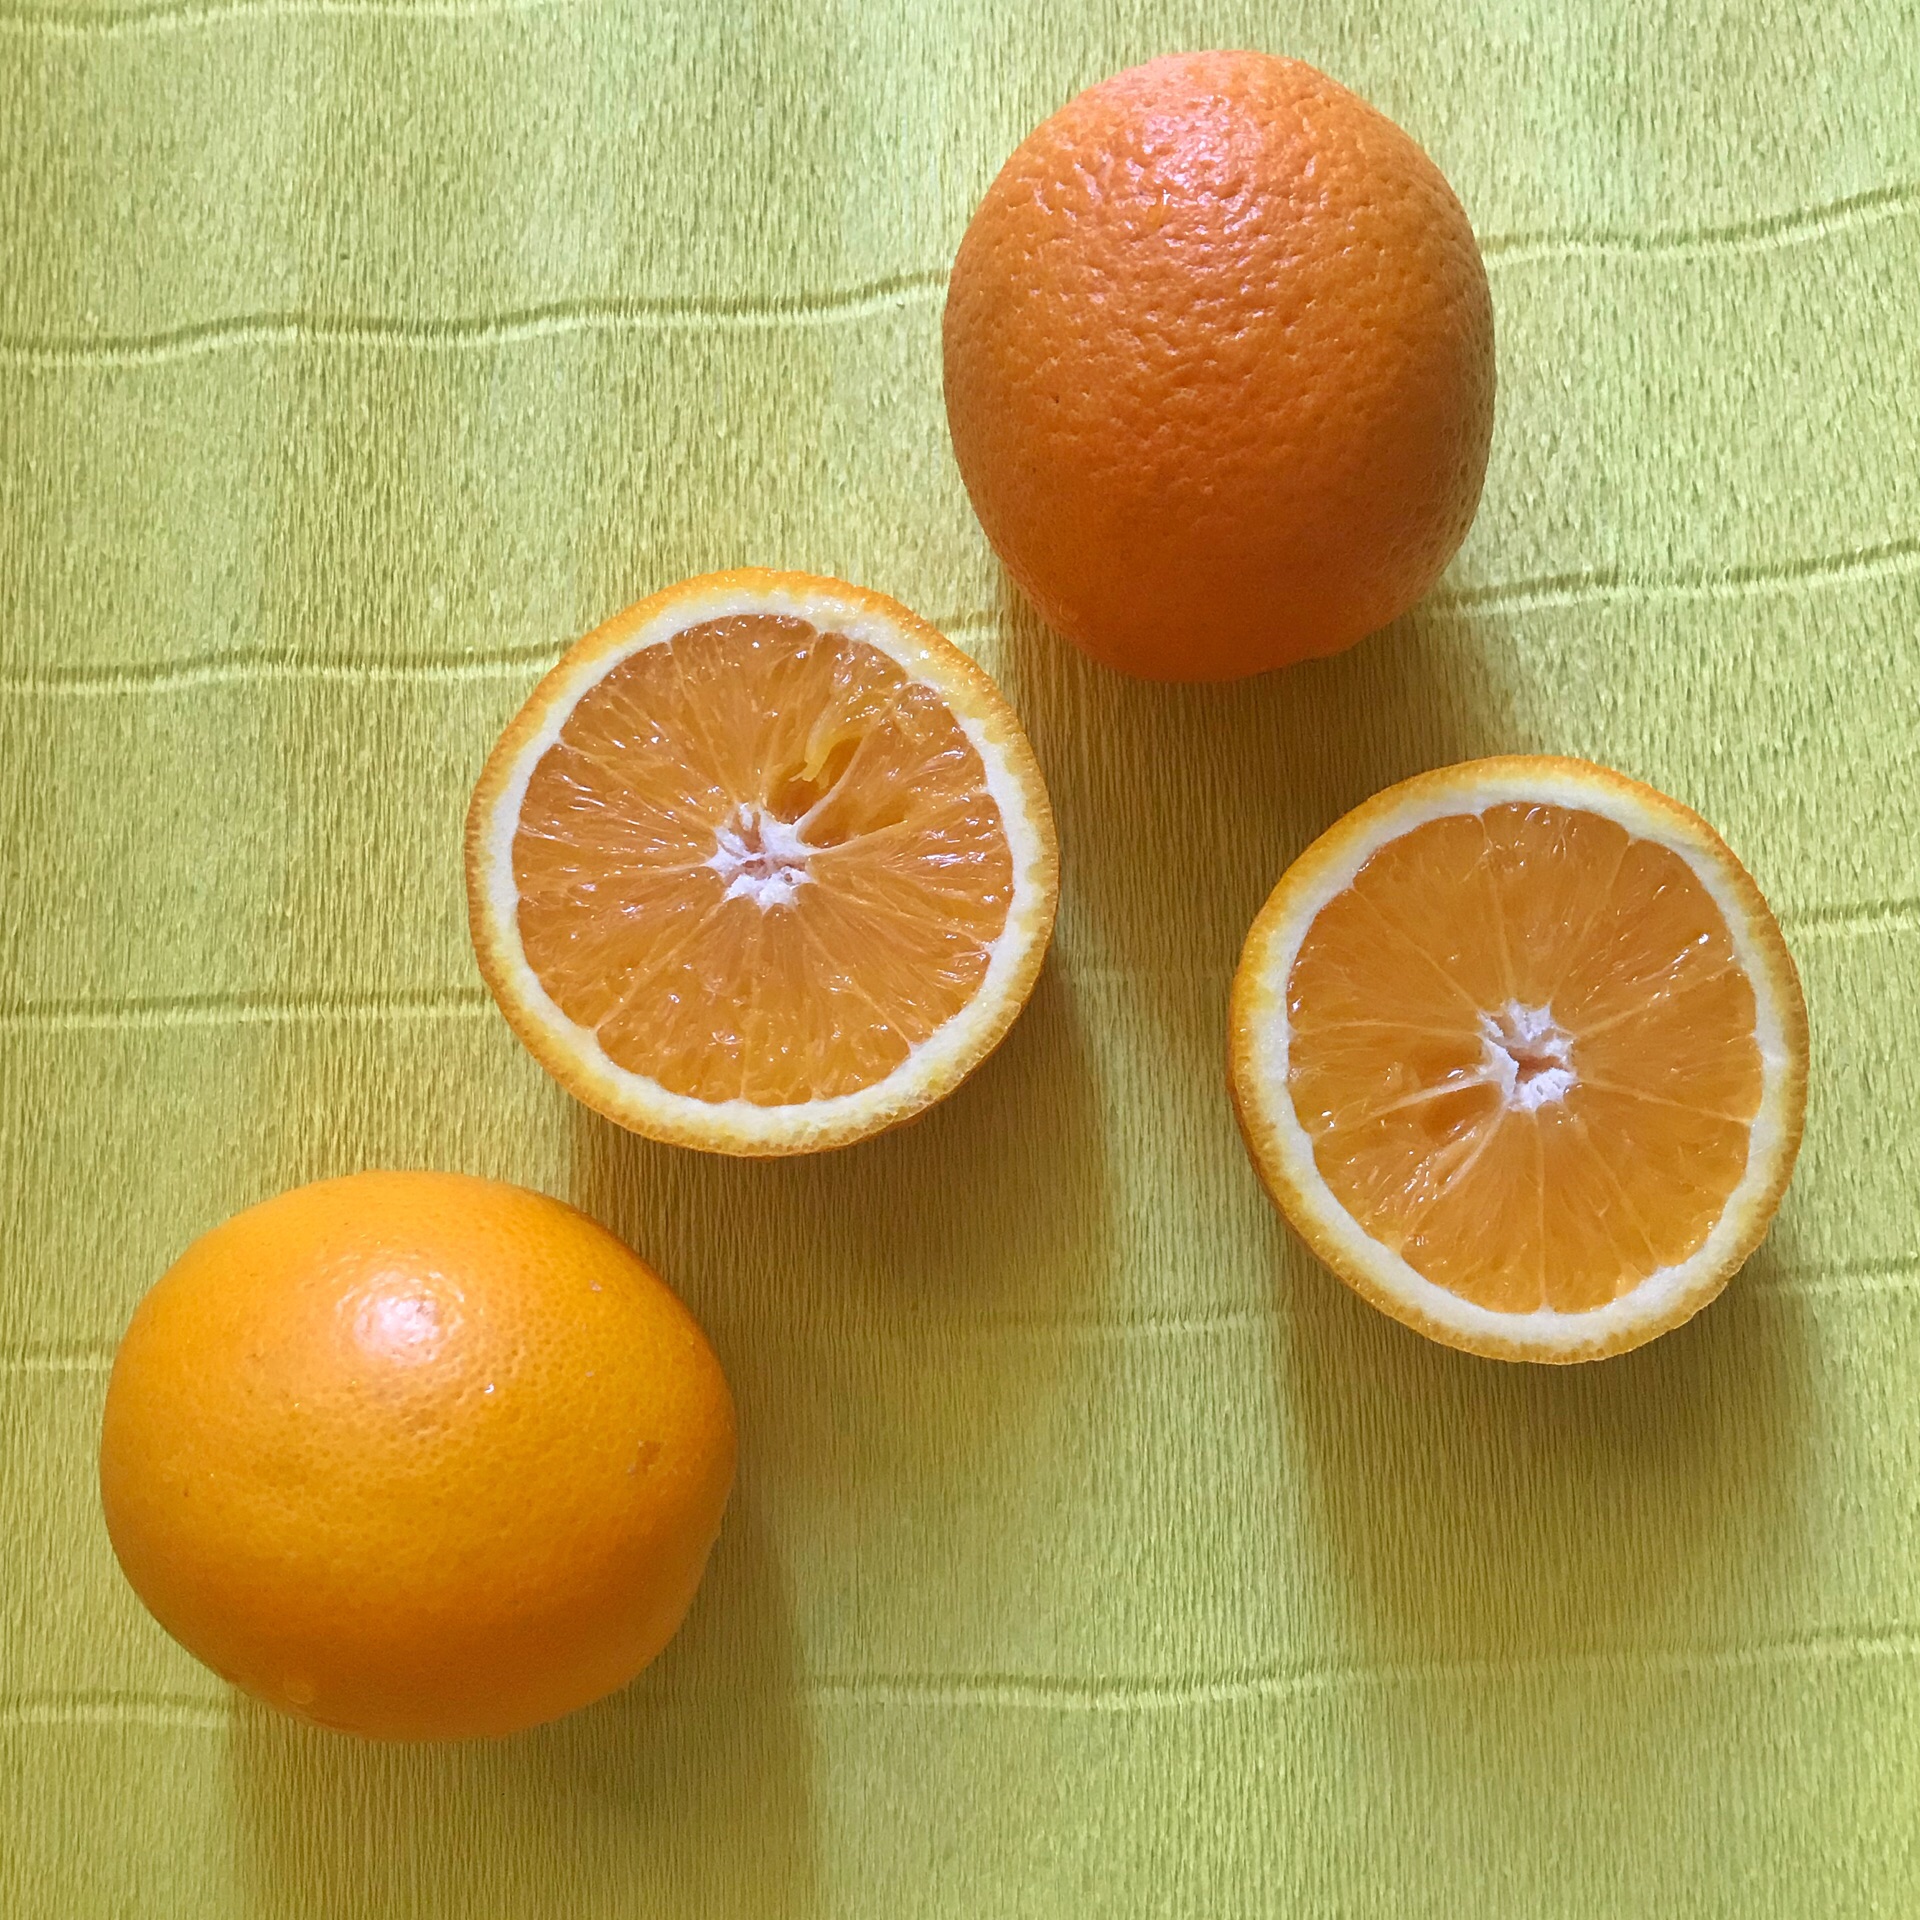 Есть три апельсина. 3 Апельсина. Апельсины 3 штуки. Три из апельсина. Апельсин на 3 части.